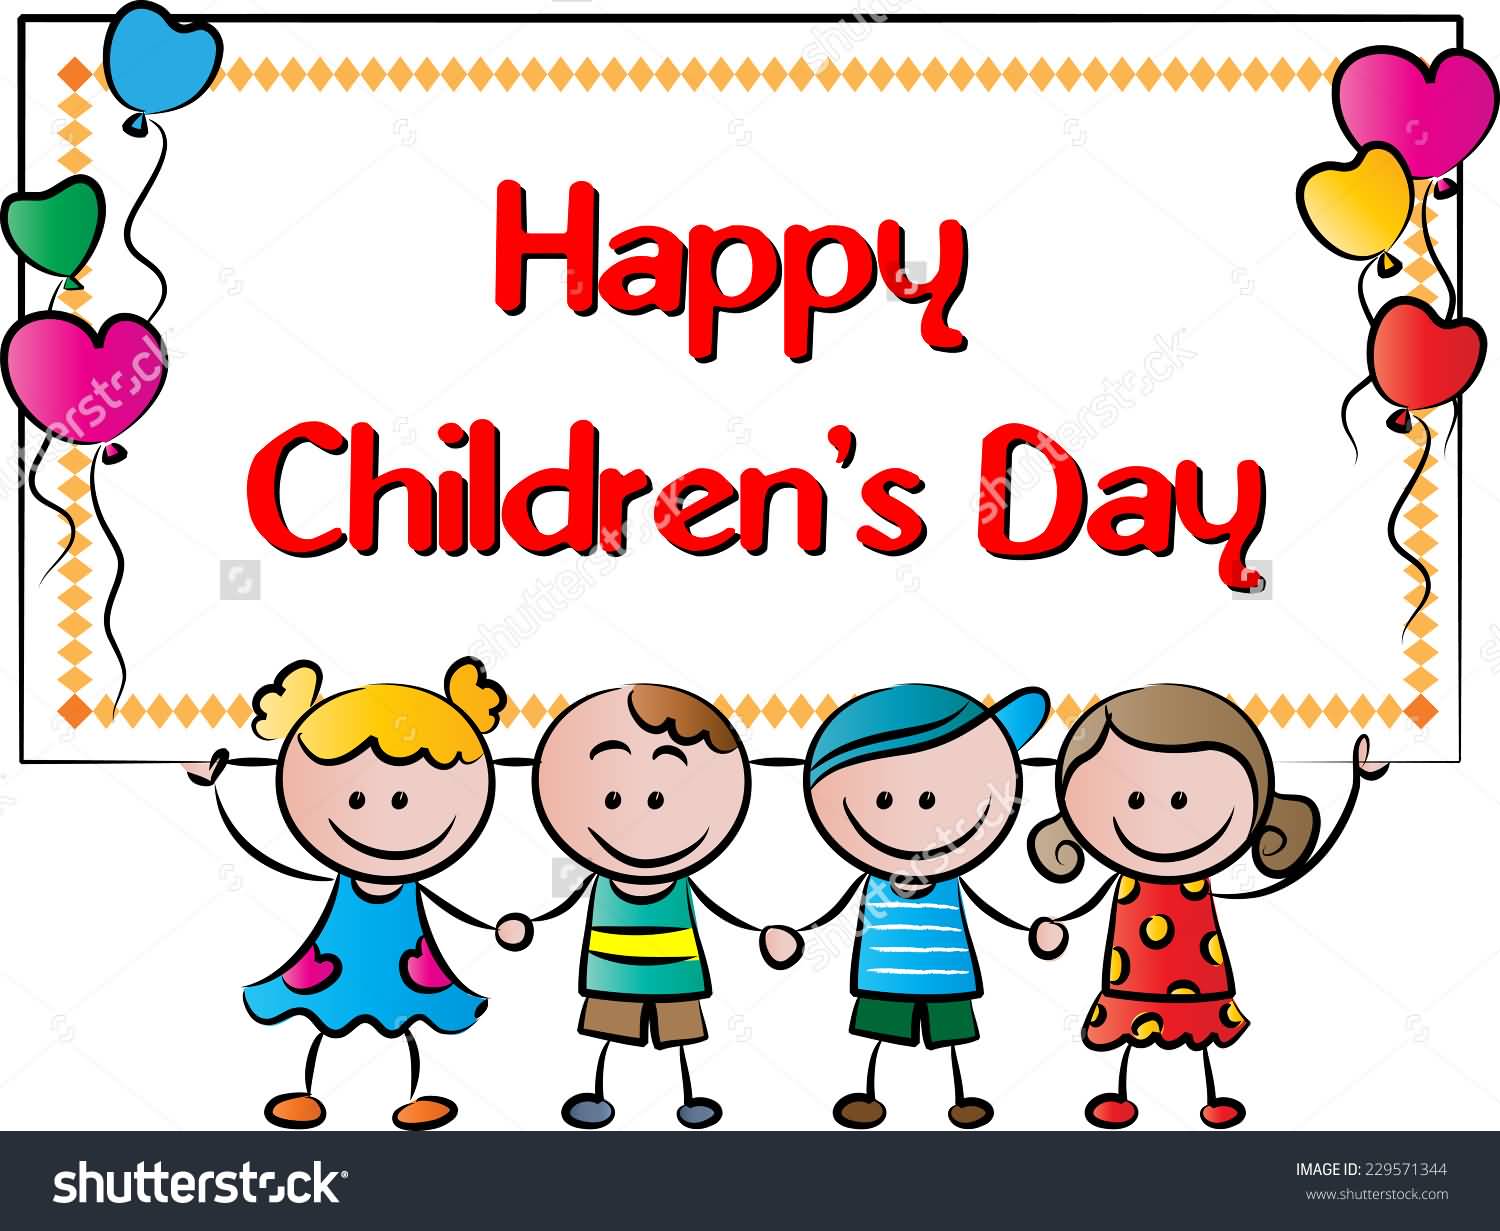 Happy Children's Day 2016 Wishes